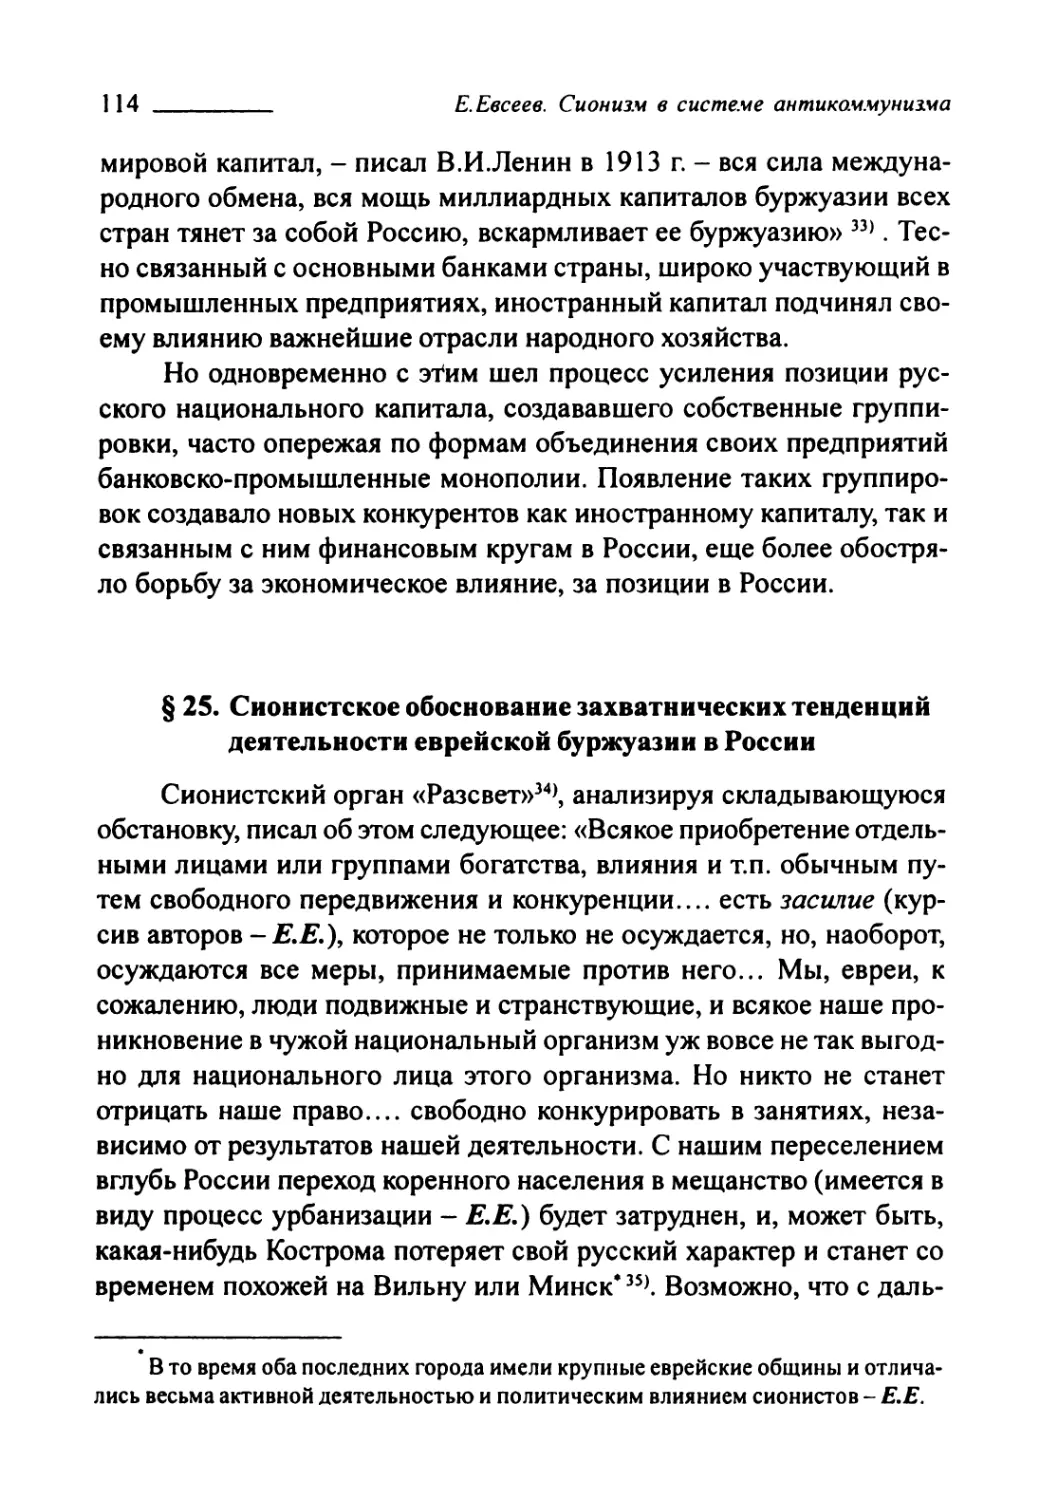 § 25. Сионистское обоснование захватнических тенденций деятельности еврейской буржуазии в России